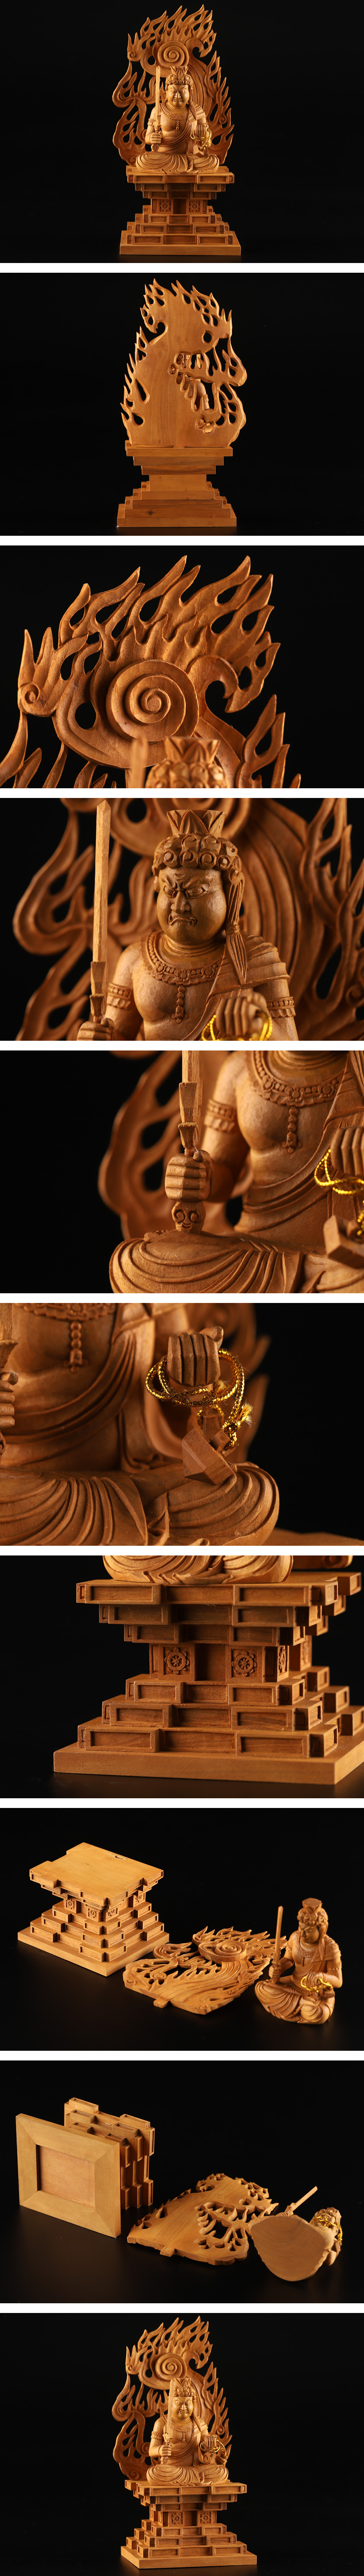 送料無料限定SALE仏教美術 白檀 木彫仏像 座像 重量226.6g KG899 その他